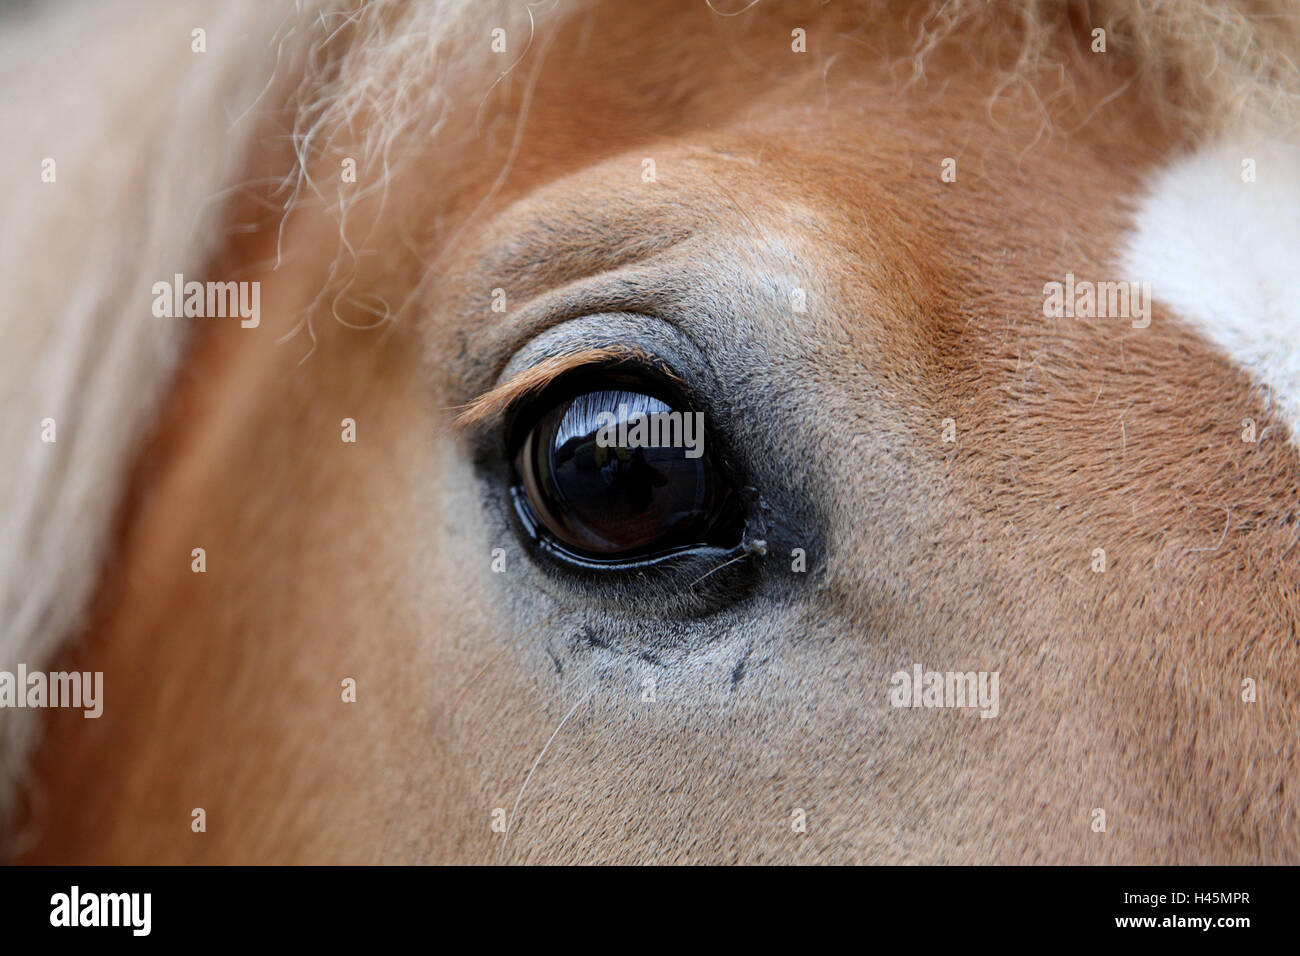 Cavallo Haflinger, occhio, close up, animale, pony, piccolo cavallo, cavallo di razza, mane, alunni, vista, momento, senso, vedere, horse's eye, ciglia, mammifero, Foto Stock